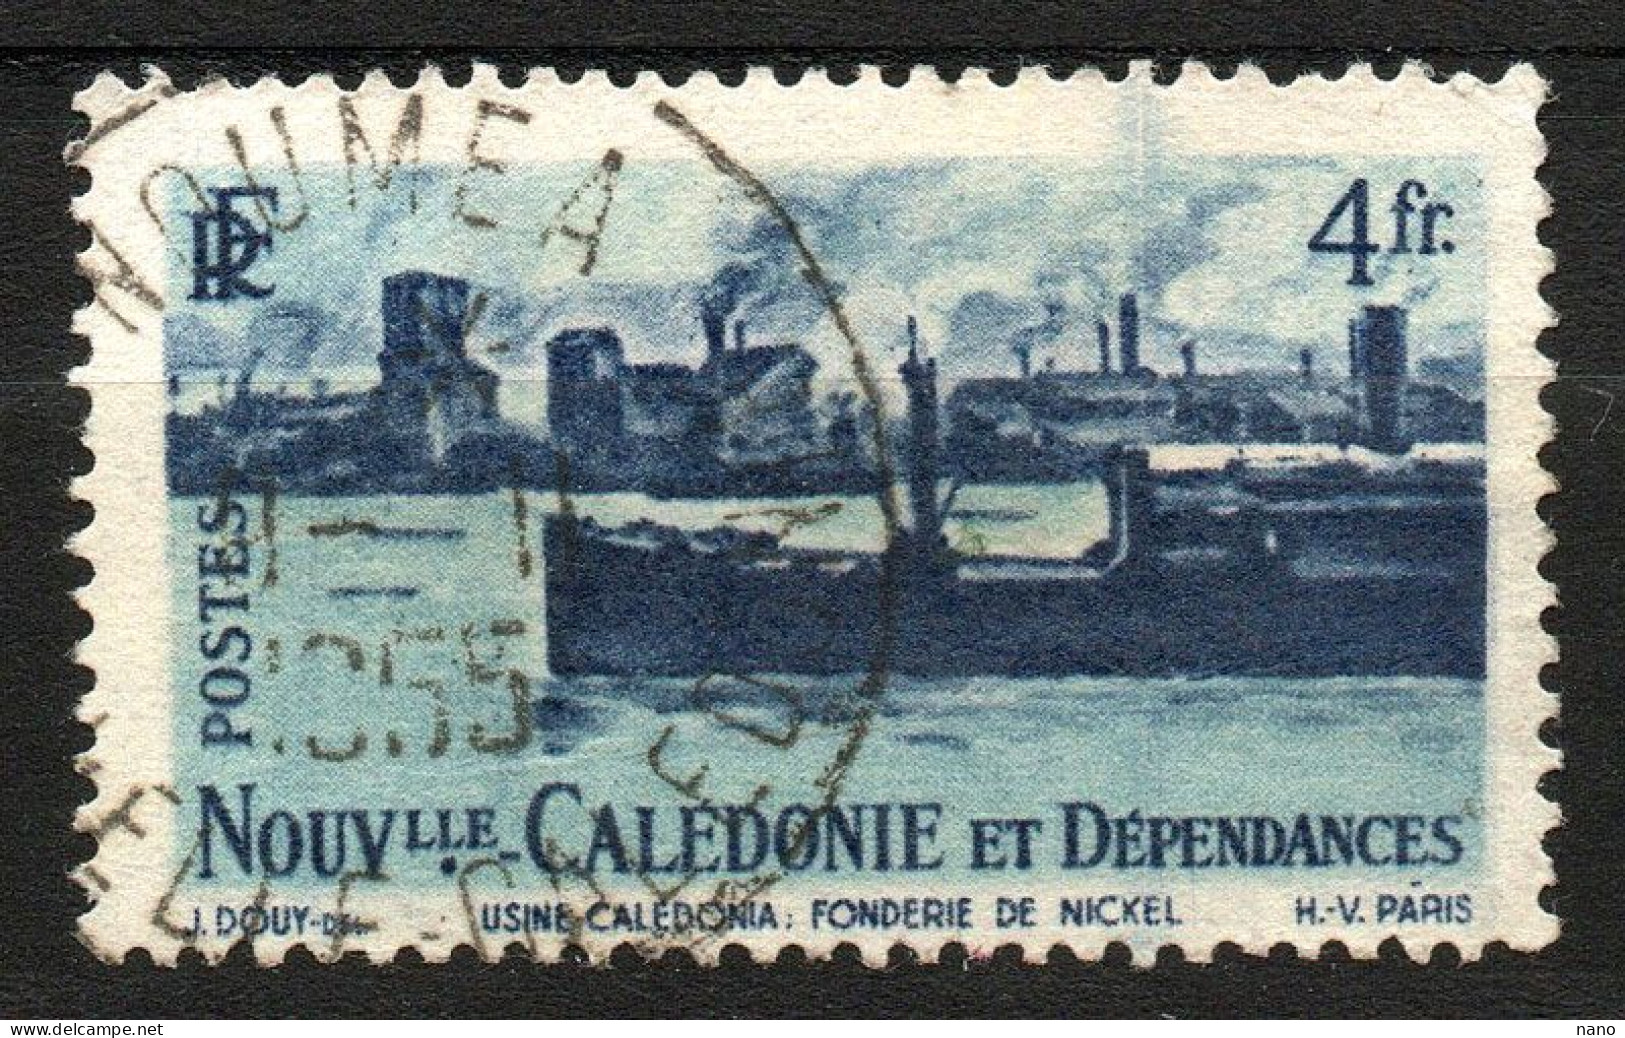 NOUVELLE-CALEDONIE - Y&T N° 271 - 4 Fr. Fonderie De Nickel - Année 1948 - Gebraucht